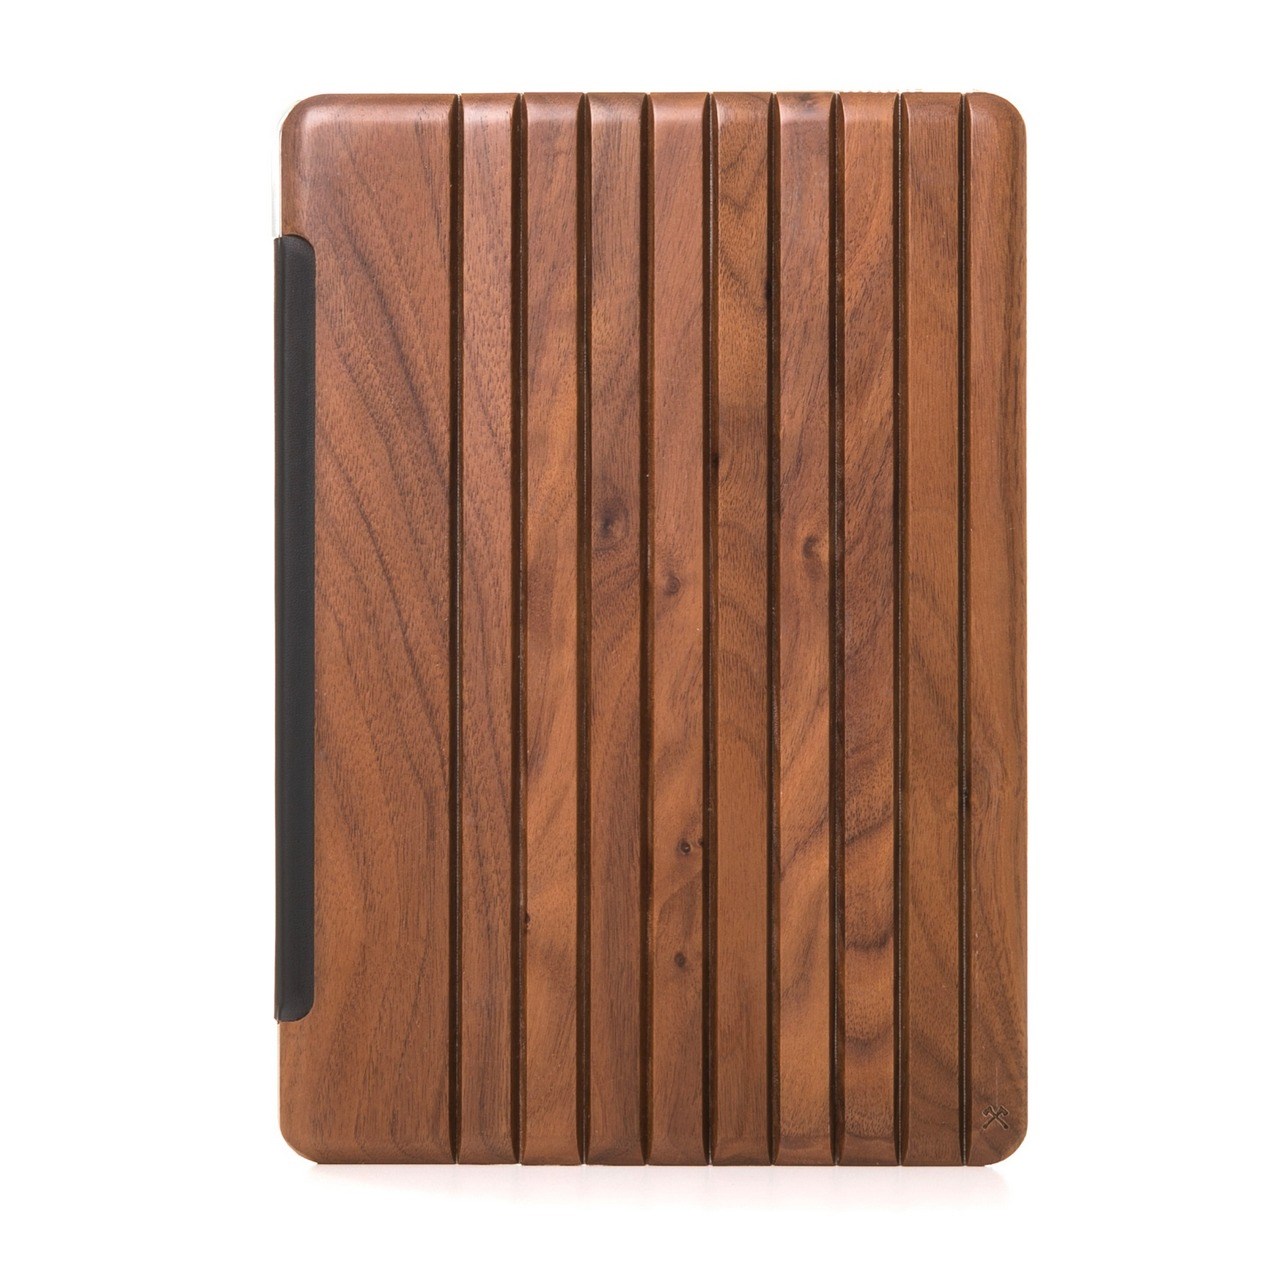 کاور چوبی وودسسوریز مدل Procter مناسب برای آیپد 9.7 اینچی 2017